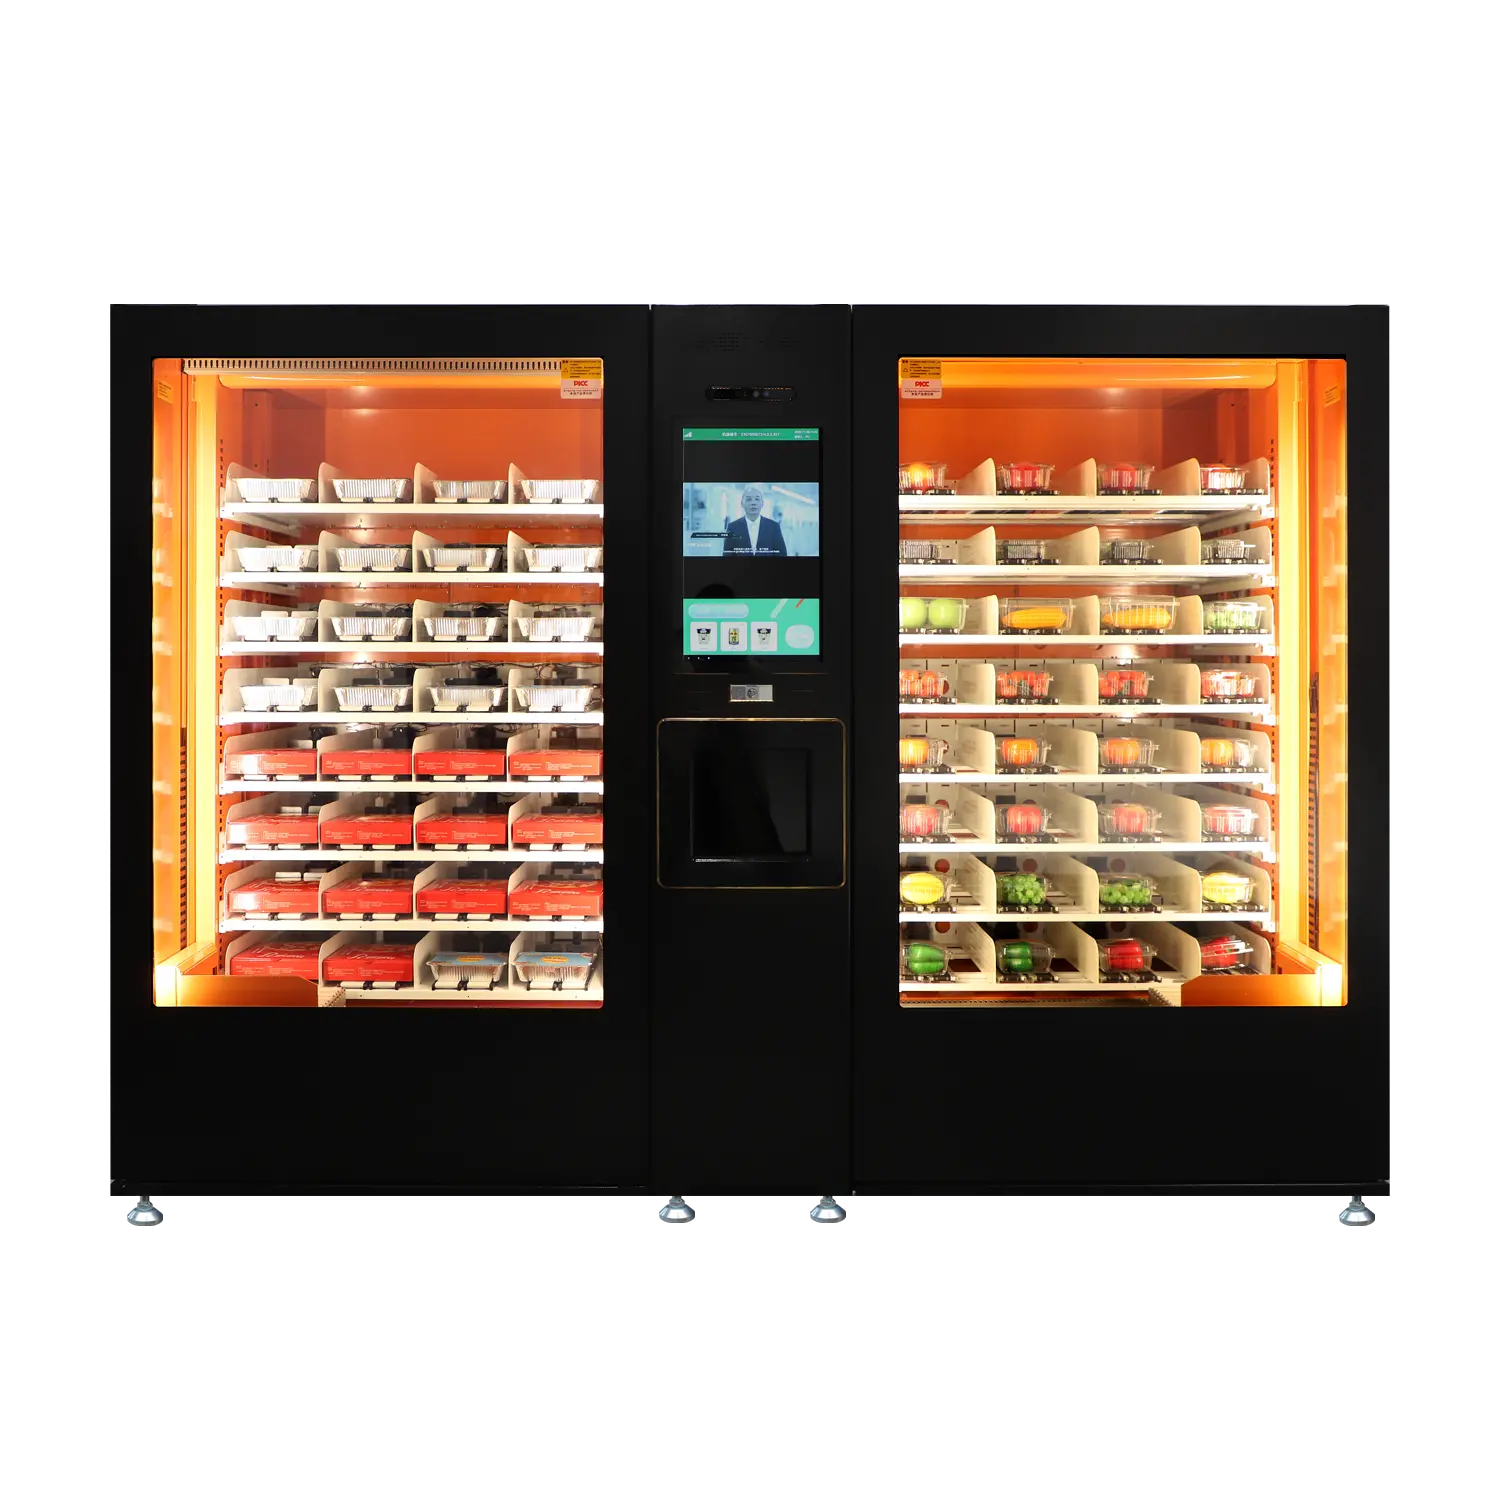 Pre-made food vending machine